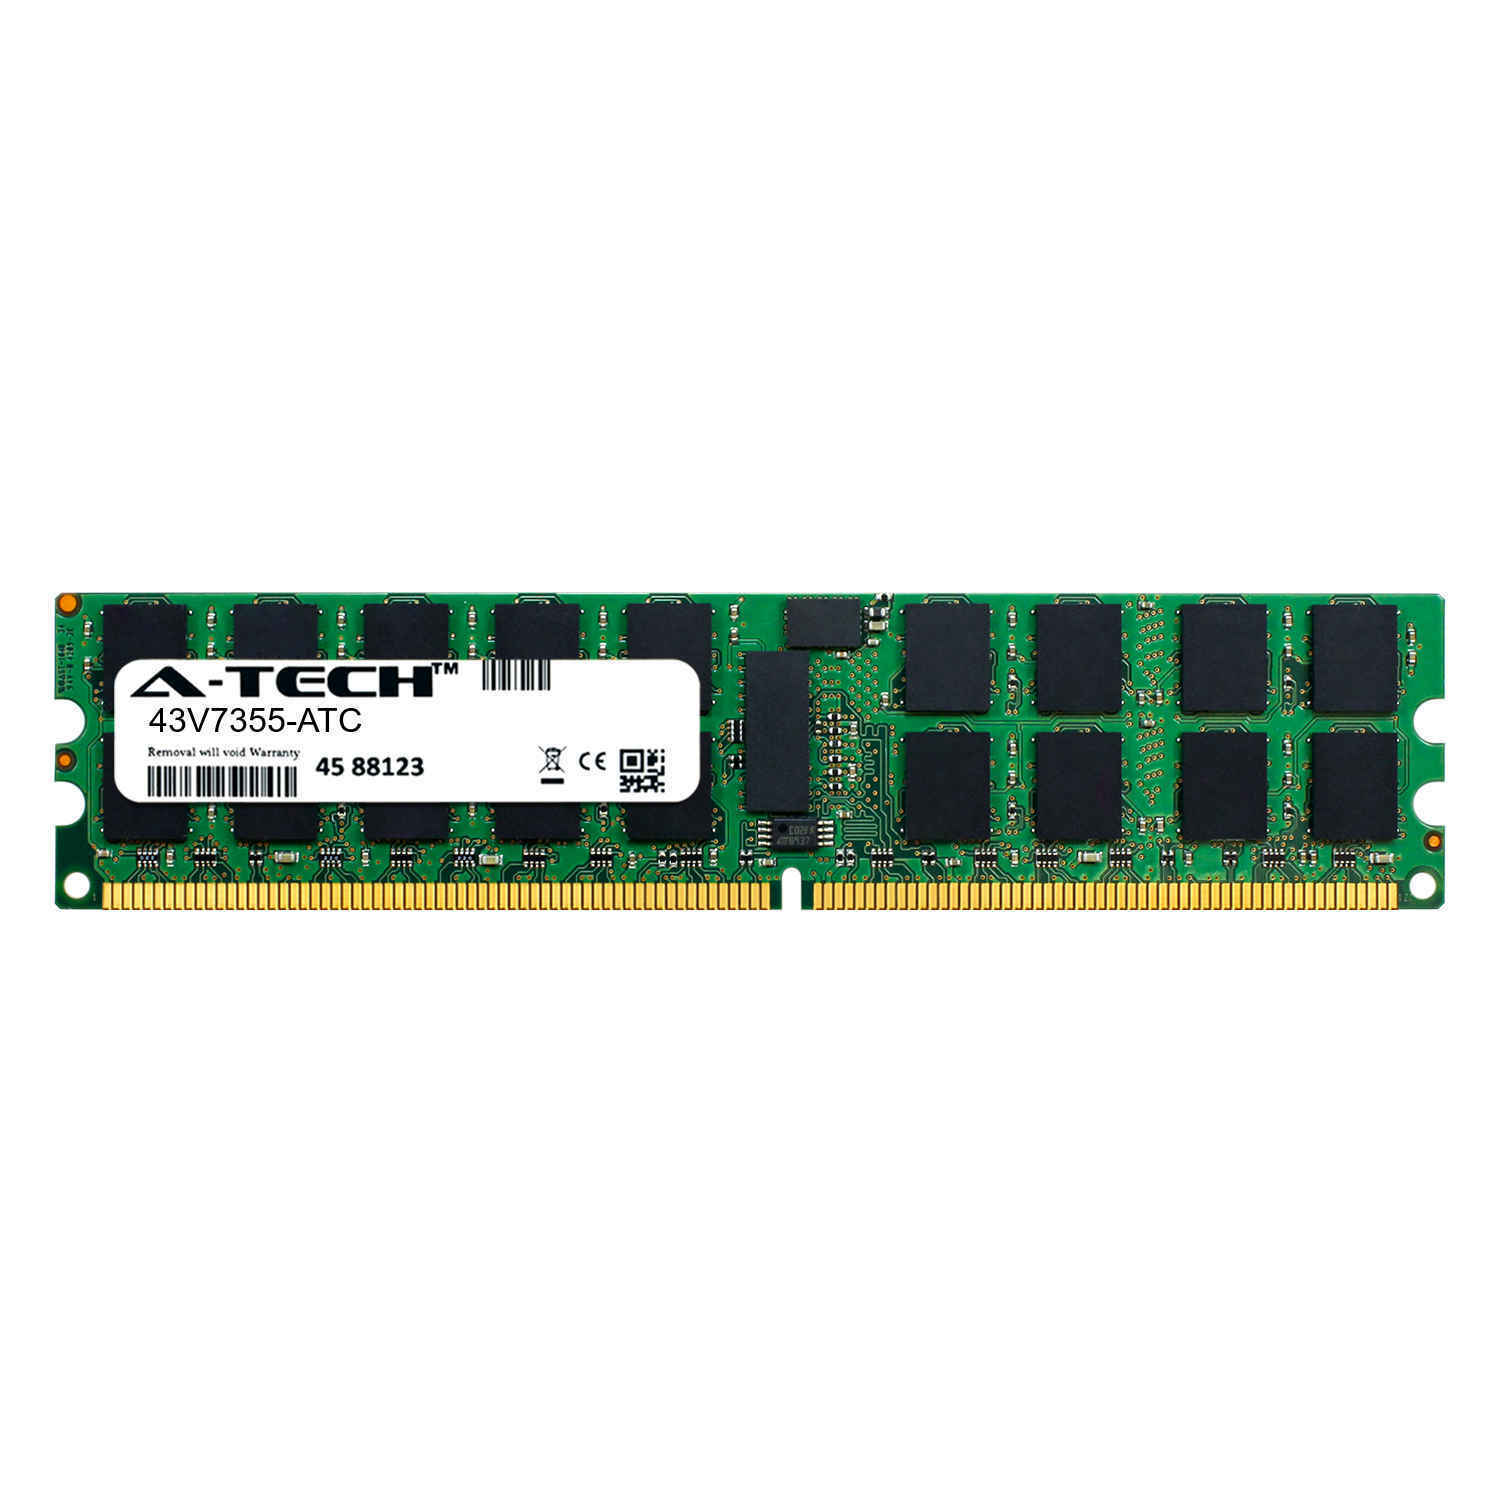 8GB DDR2 PC2-5300R 667MHz RDIMM (IBM 43V7355 Equivalent) Server Memory RAM